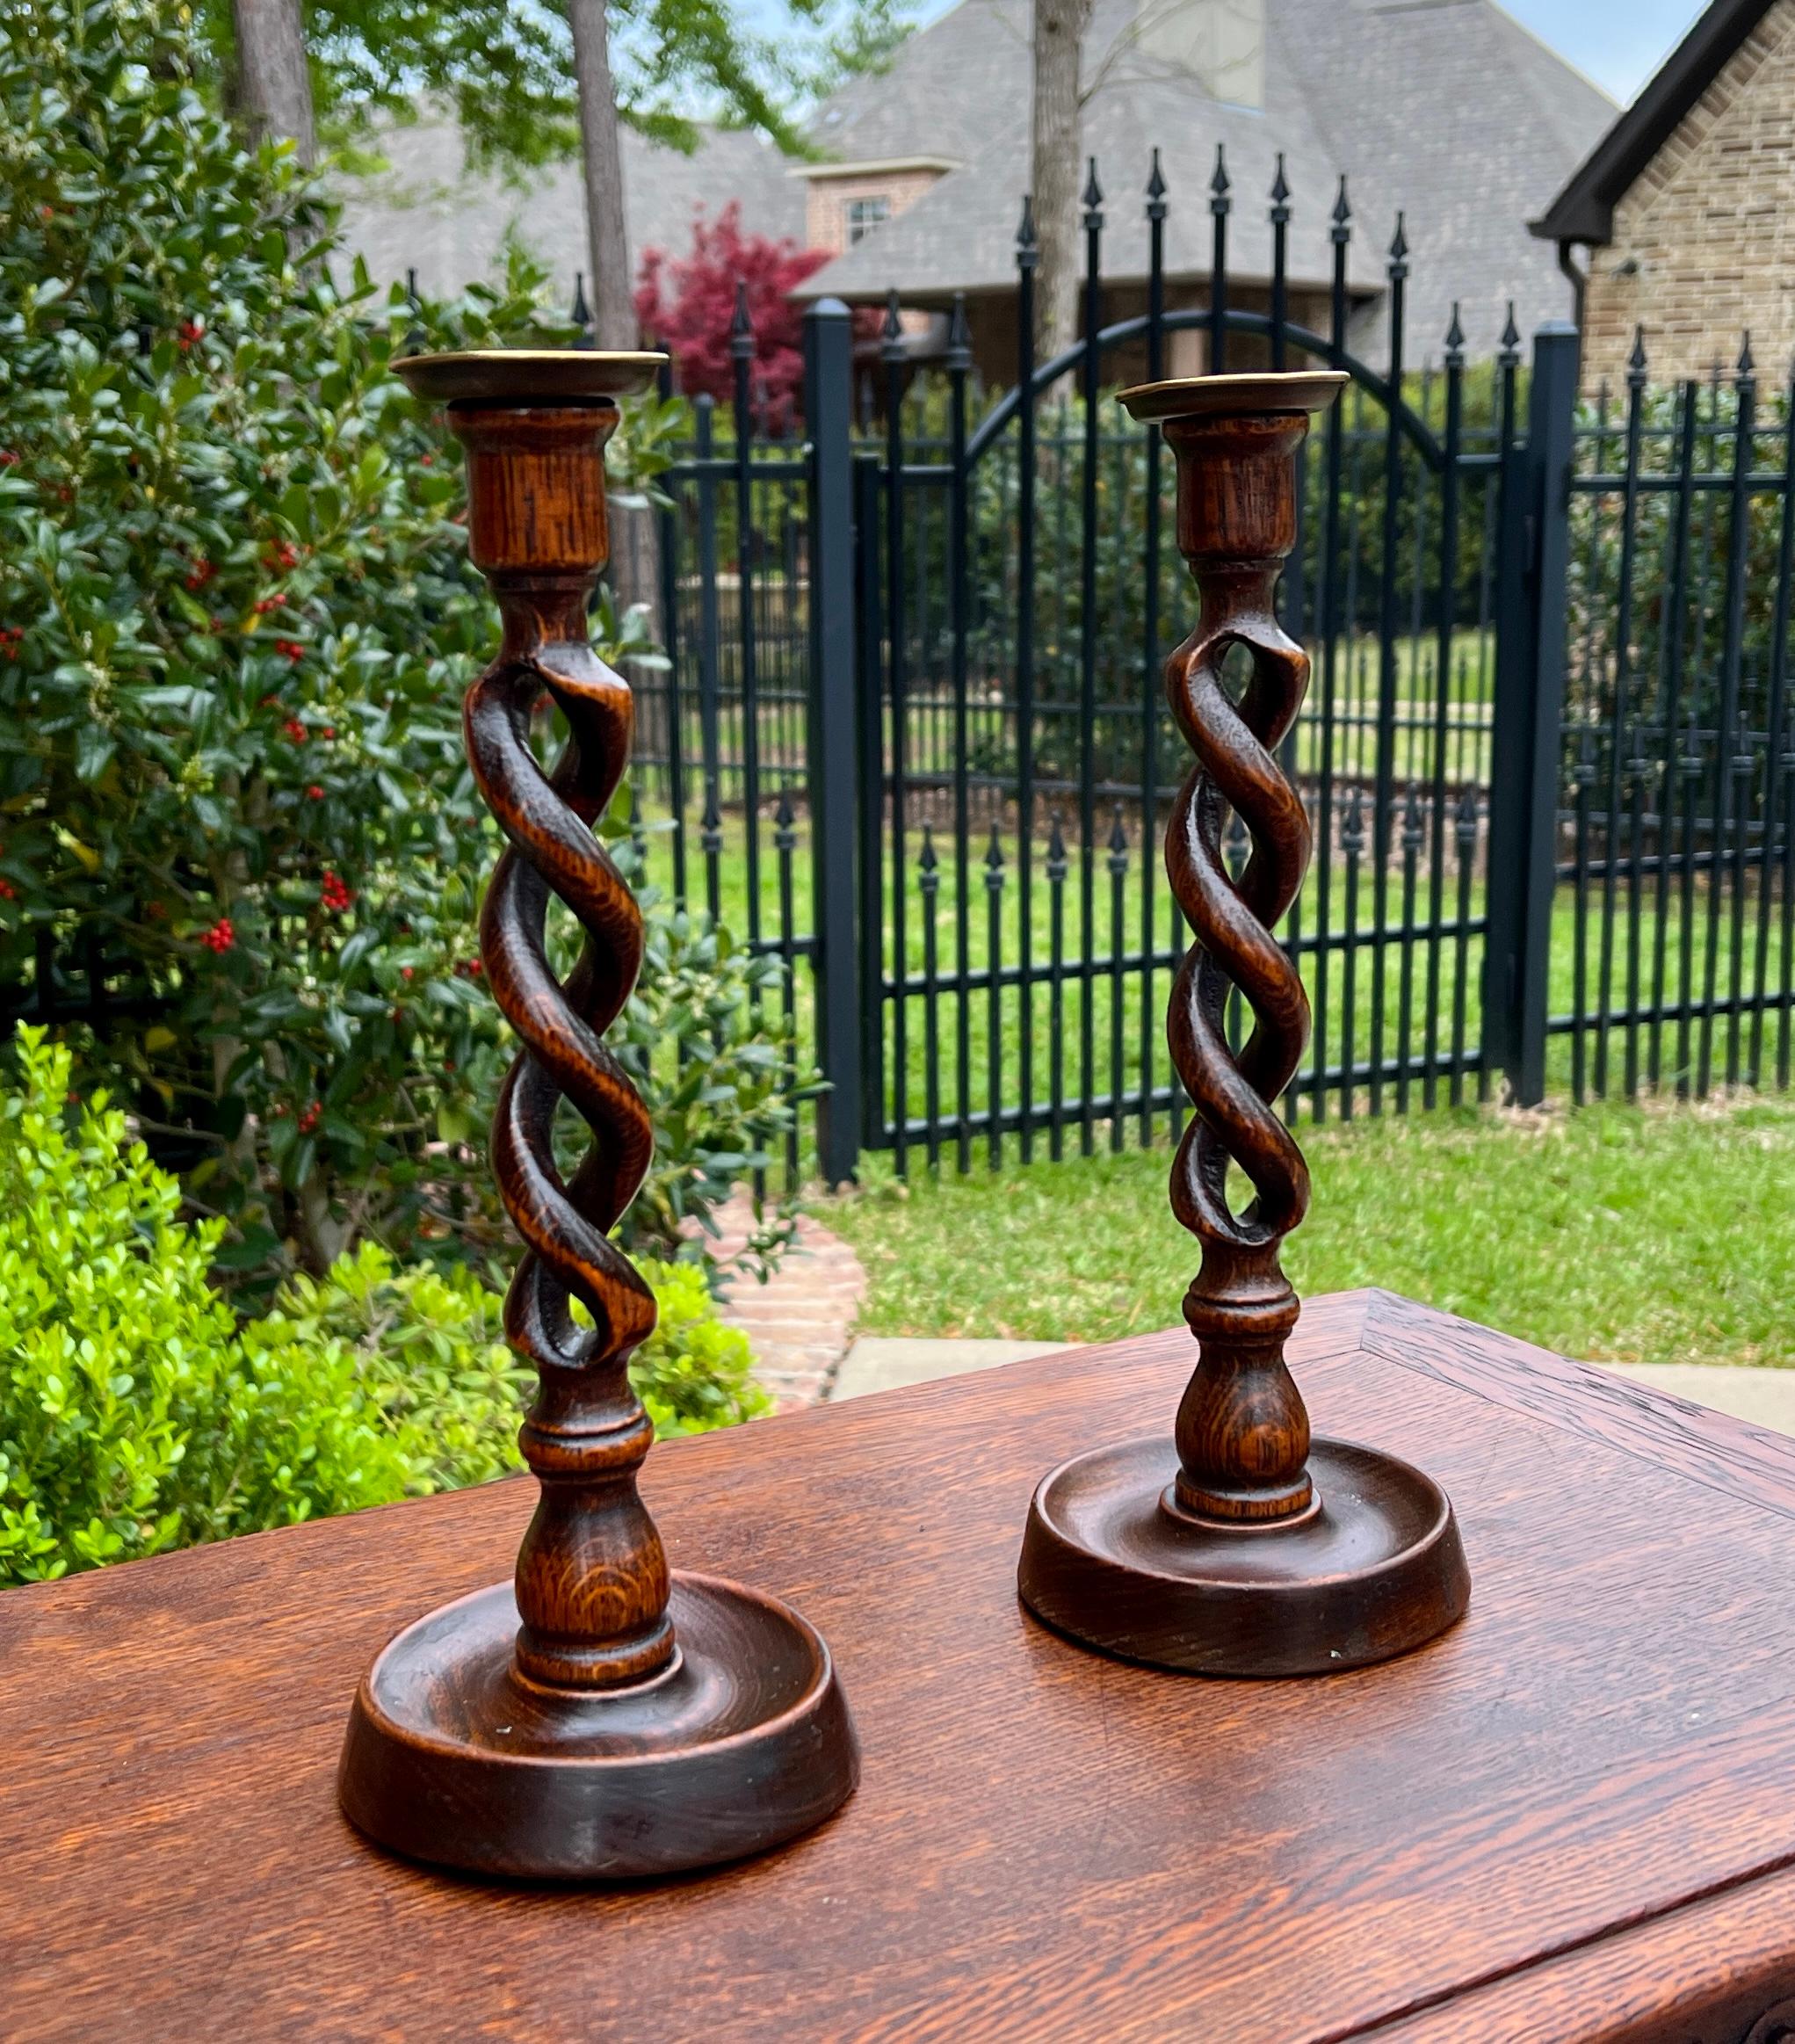  CHARMING Paar antike englische Eiche OPEN BARLEY TWIST Kerzenständer c. 1920s

Schöner Twist mit dunkler Eichenpatina

12,5